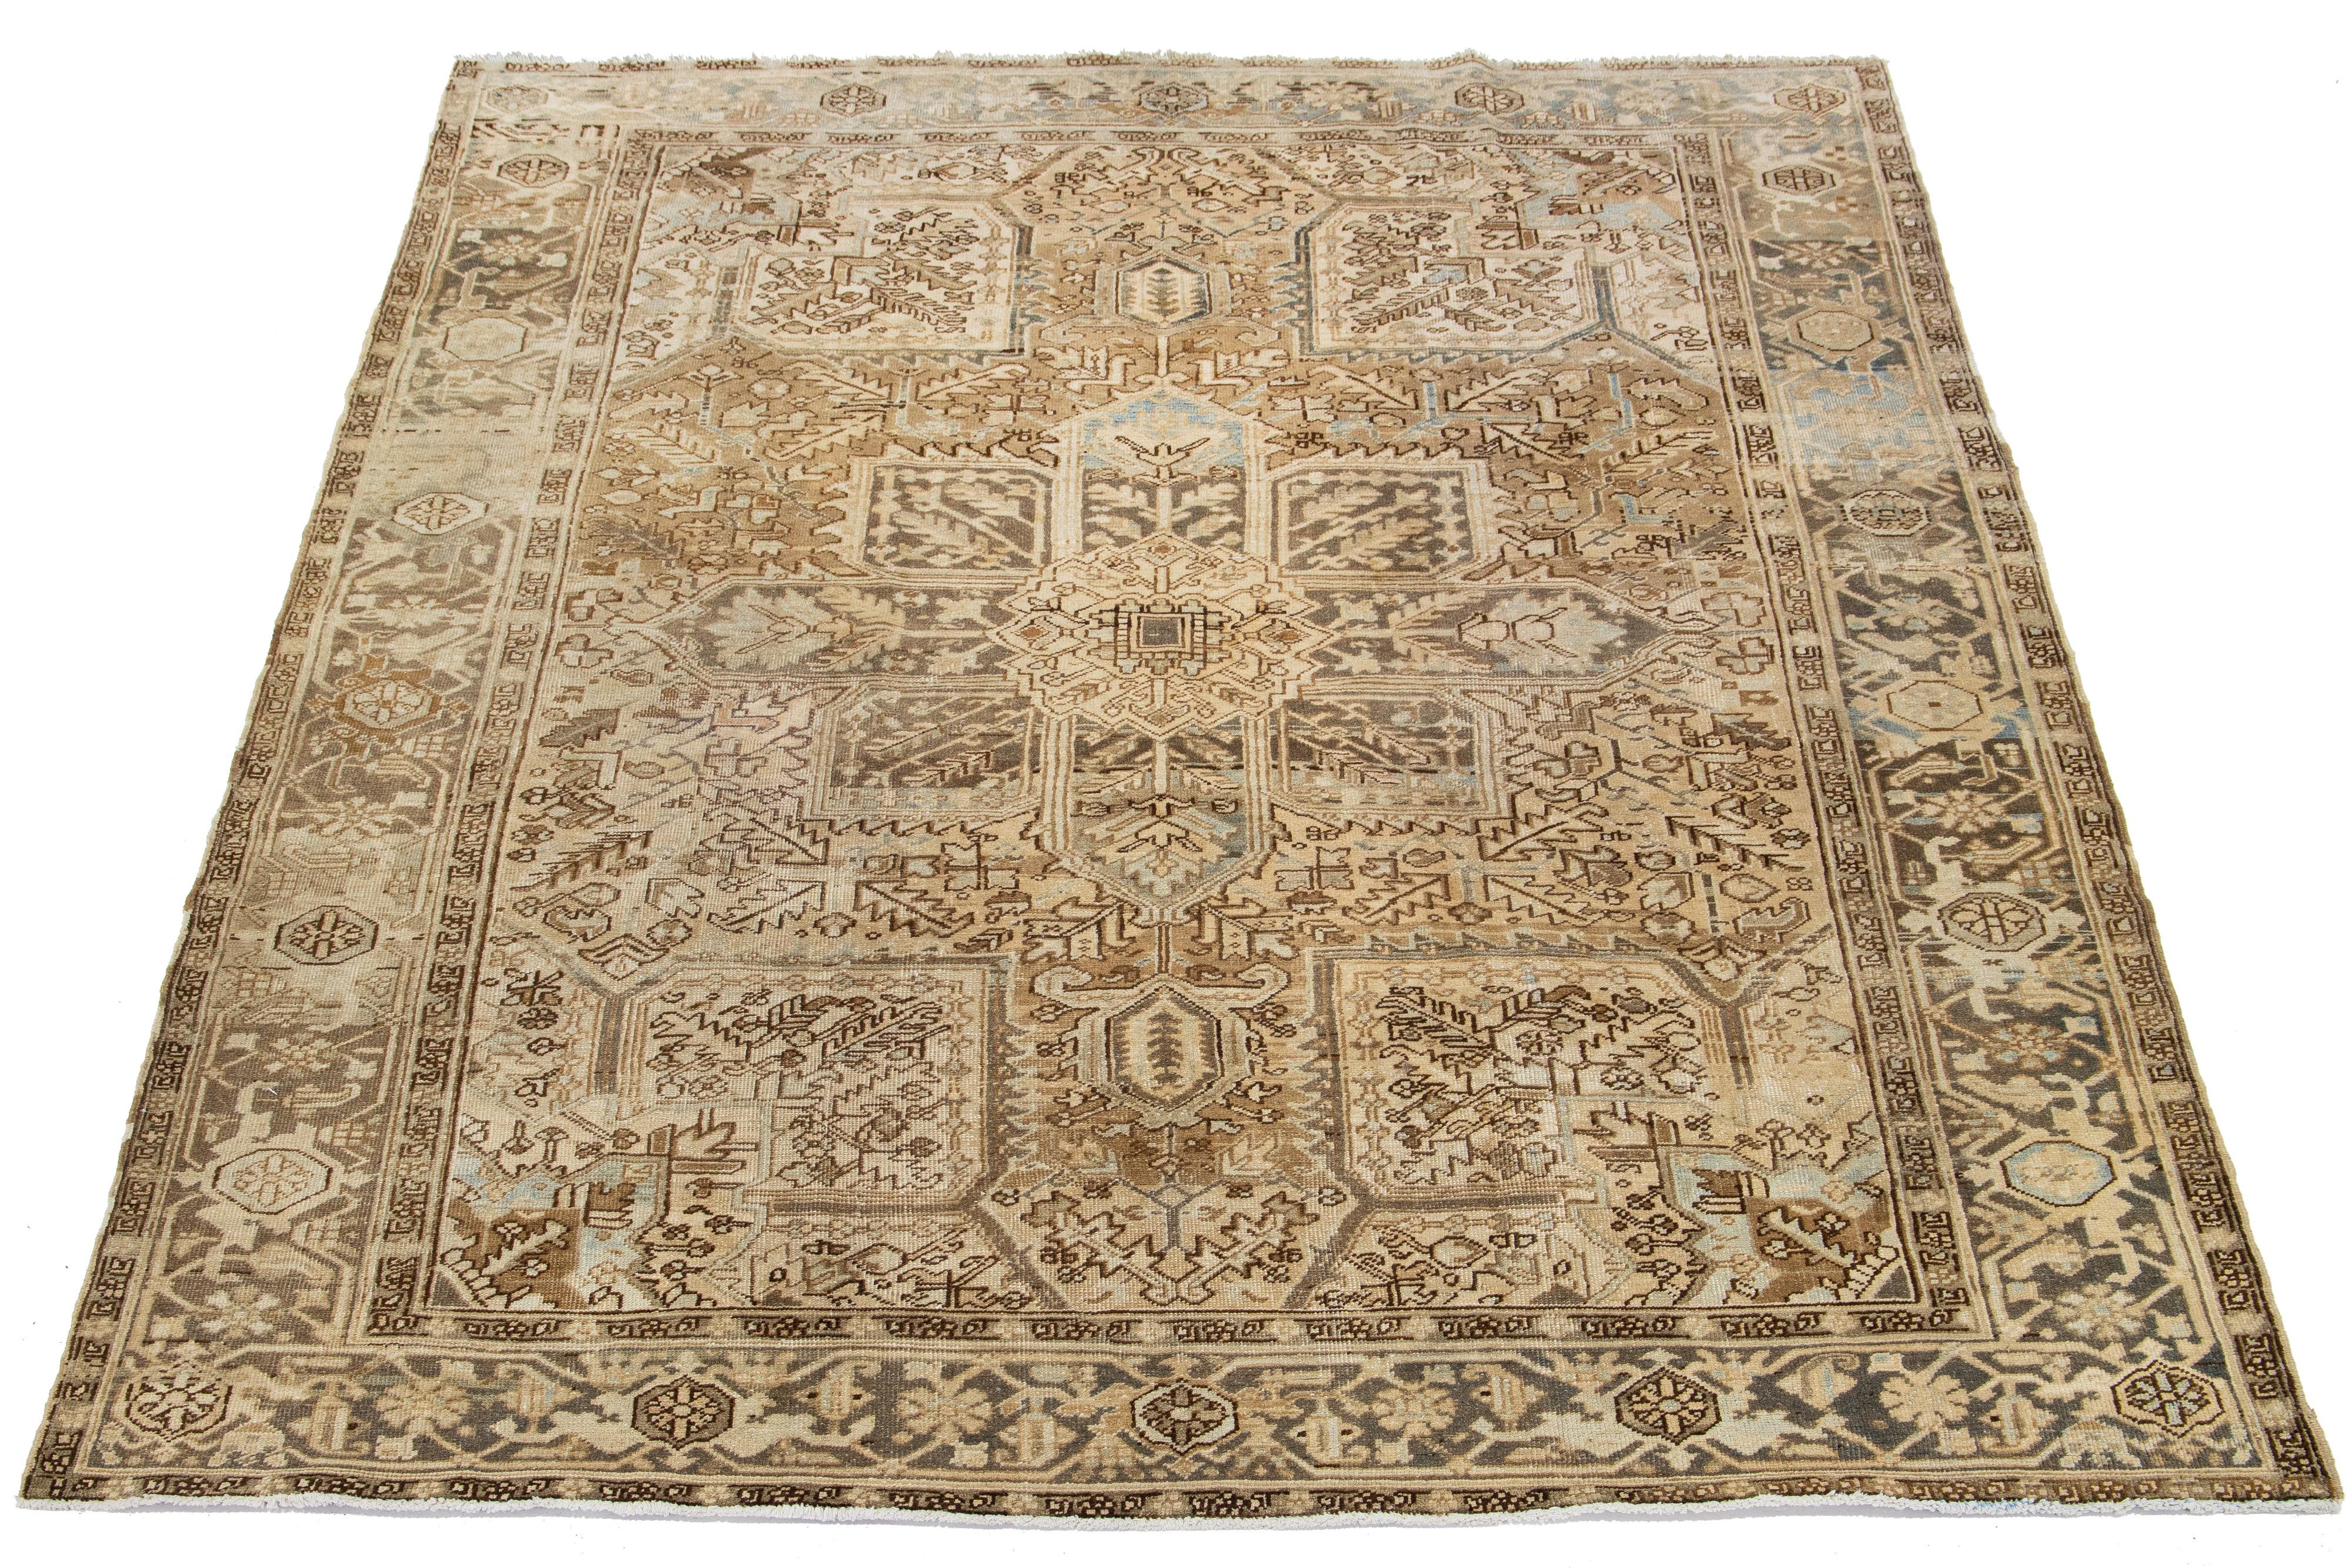 Dieser antike persische Heriz-Teppich ist aus handgeknüpfter Wolle gefertigt. Das hellbraune Feld zeigt ein fesselndes Allover-Muster, das mit Blau-, Grau- und Beigetönen verziert ist.

Dieser Teppich misst 8'5' x 10'3